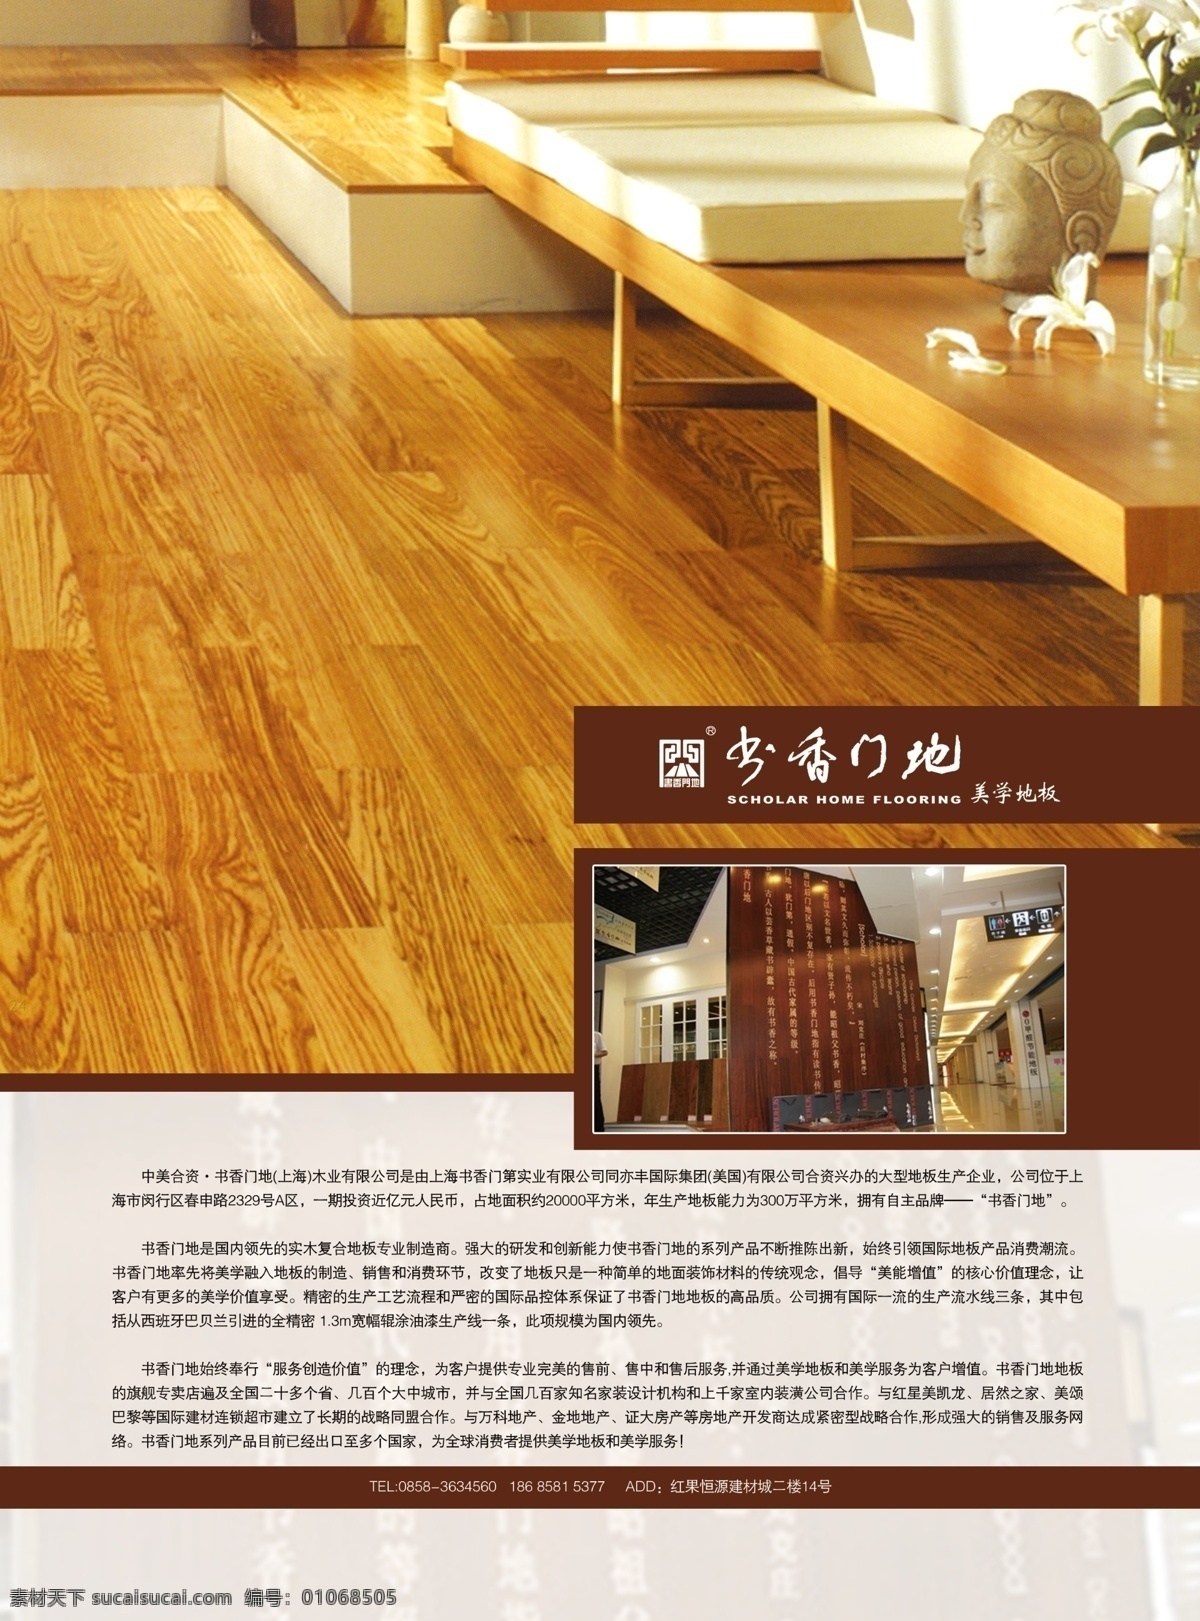 书香门地 美学地板 地板广告 木地板 木地板广告 广告设计模板 源文件